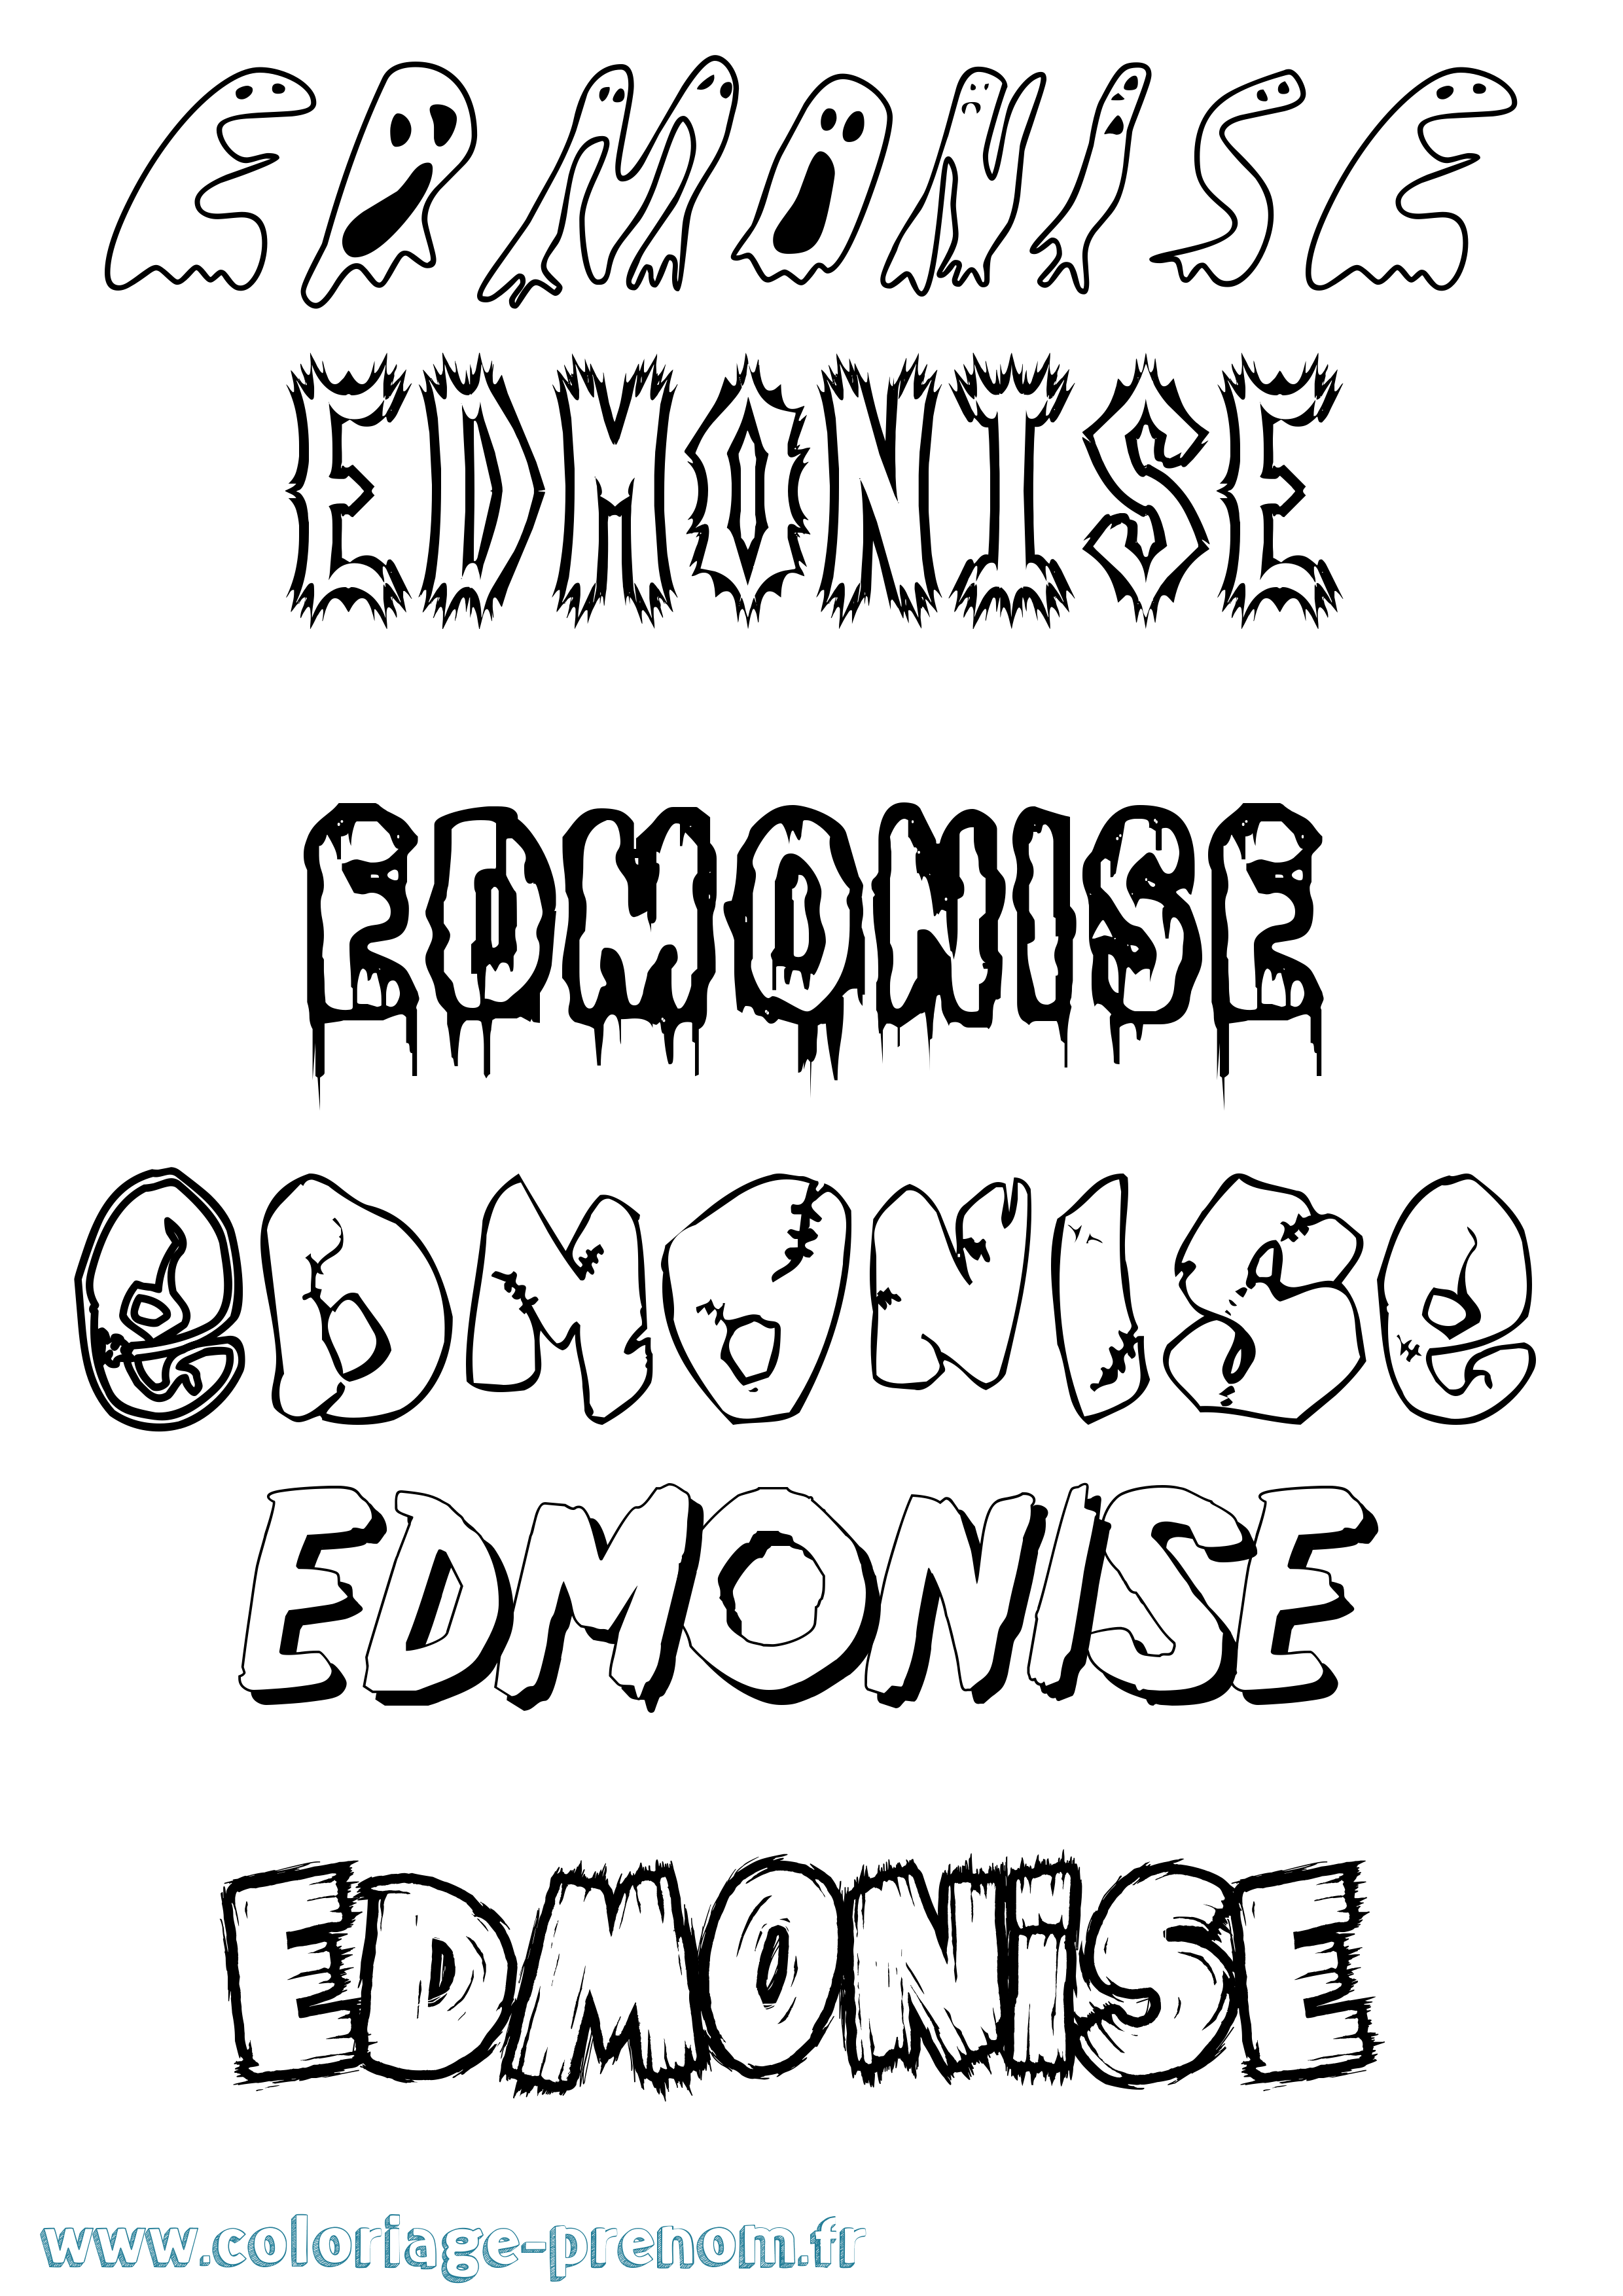 Coloriage prénom Edmonise Frisson